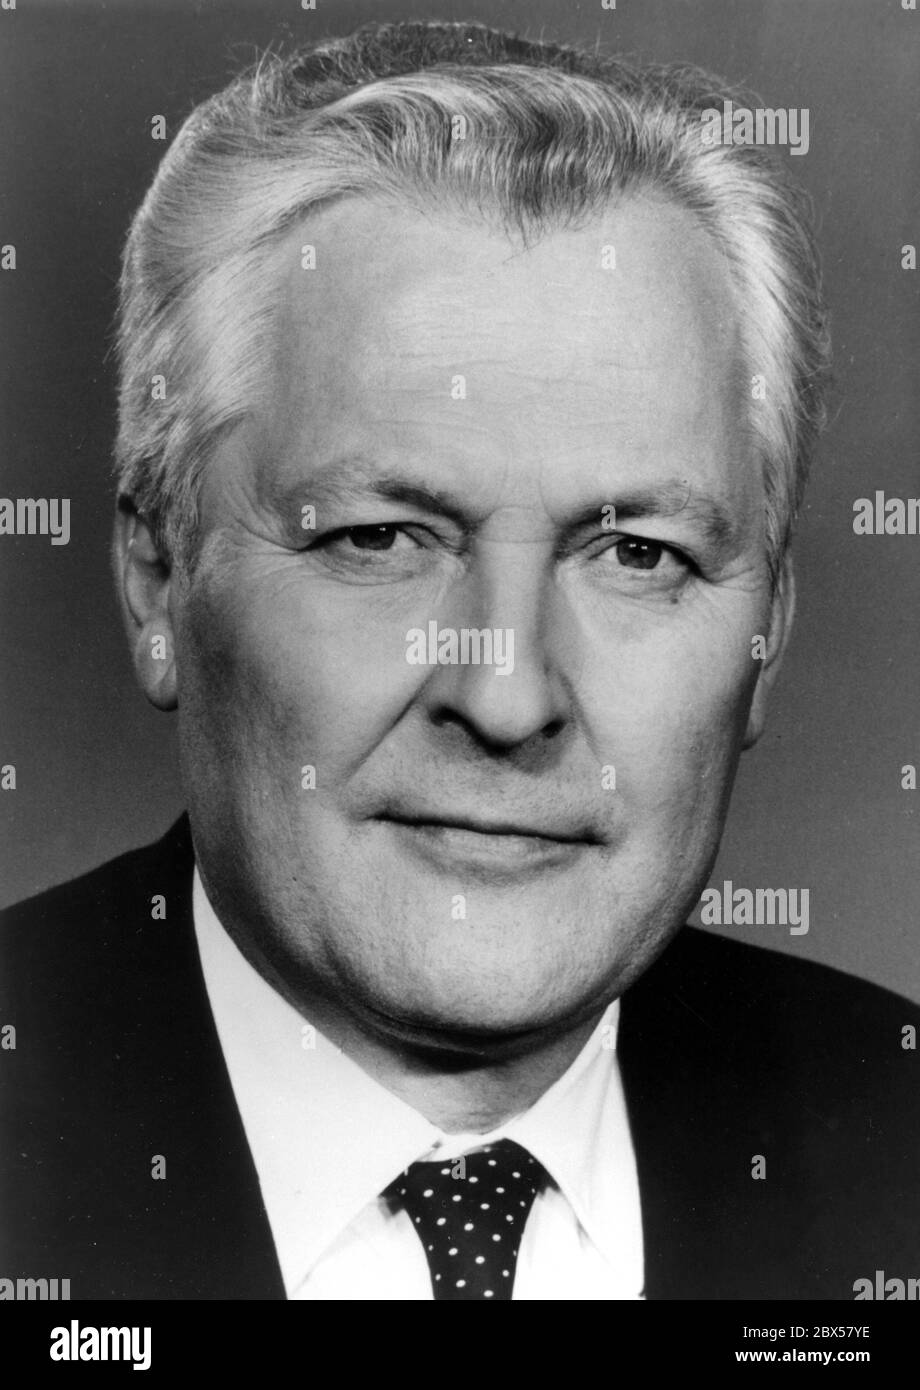 Werner Felfe (04.01.1928 - 07-09.1988) von 1971 - 1981 war SED-Bezirksstaatssekretär Halle, von 1981 - 1988 war Mitglied des DDR-Staatsrats, von 1976 - 1988 Mitglied des SED-Politbüros und seit 1981 Staatssekretär für Landwirtschaft des Zentralkomitees. Kurz vor seinem plötzlichen Tod im Jahr 1988 galt als möglicher Nachfolger des SED-Führers Erich Honecker. Stockfoto